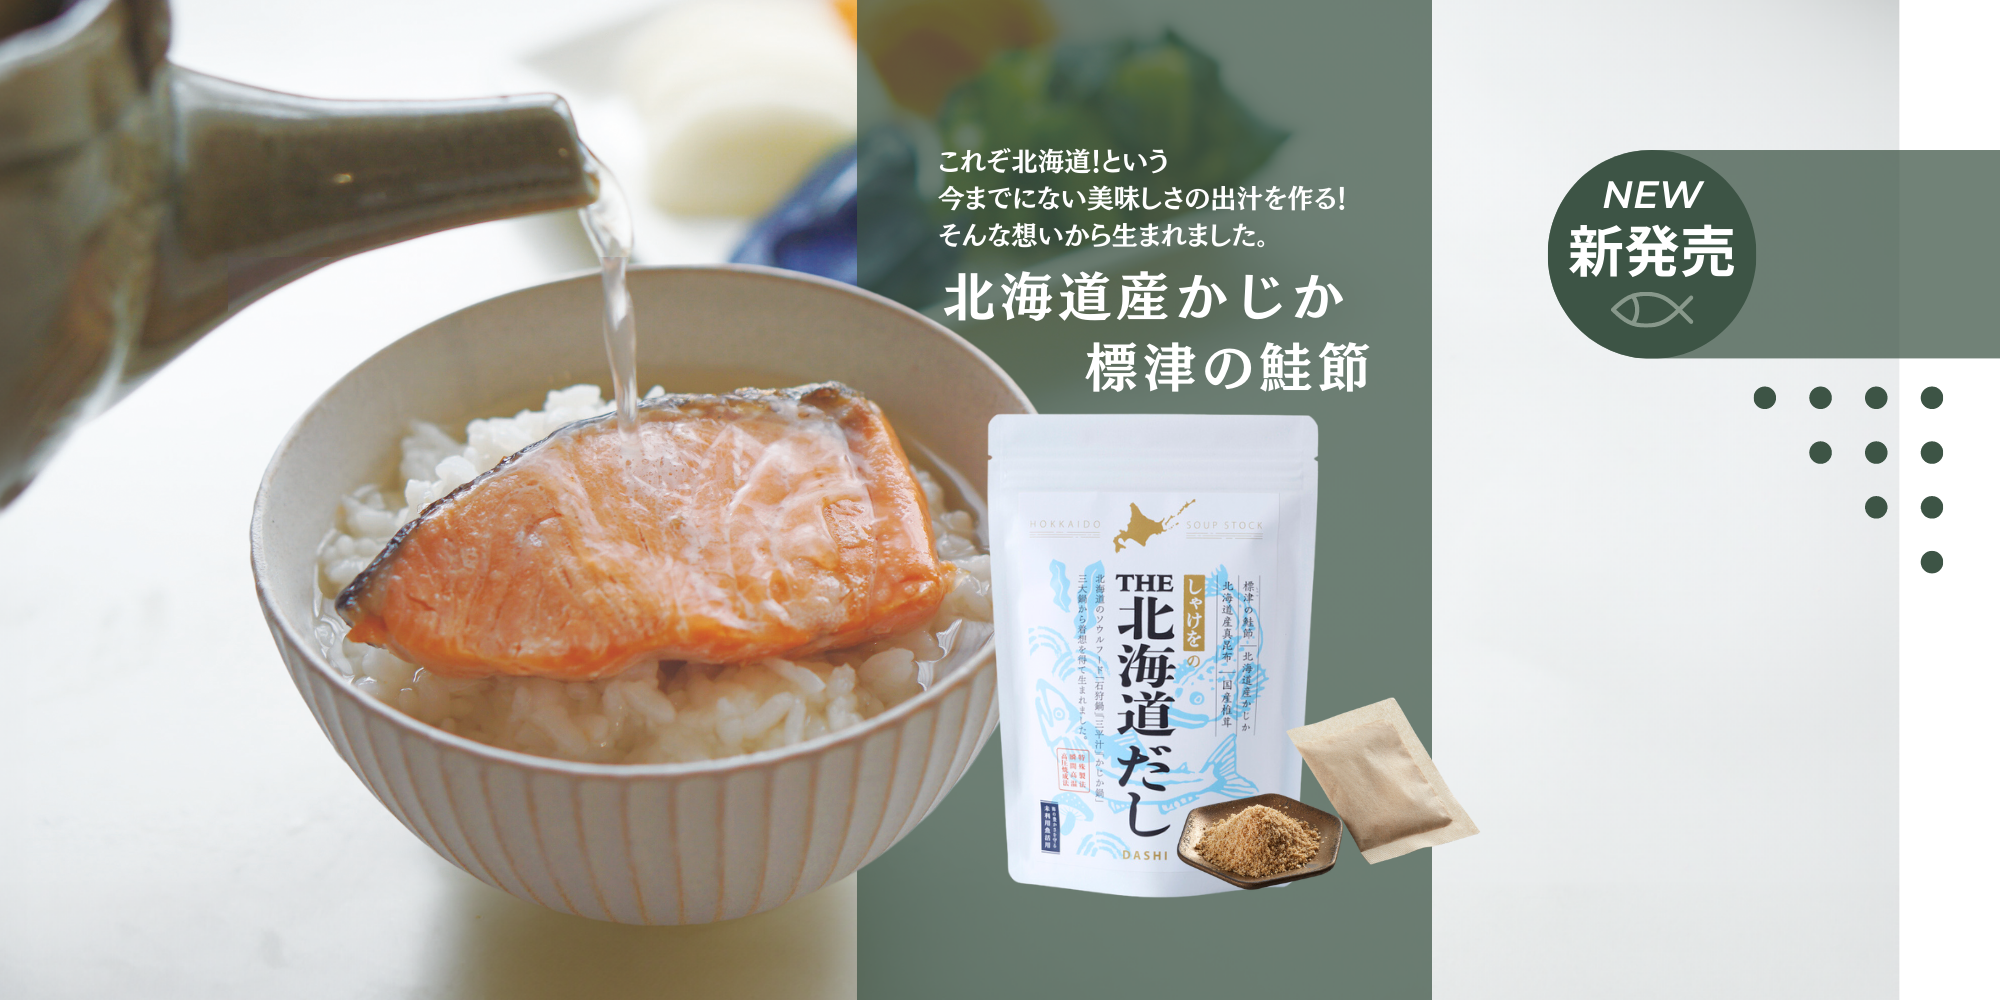 これぞ北海道！という 今までにない美味しさの出汁を作る！ そんな想いから生まれました。こだわりの素材、北海道産かじか・標津の鮭節を使用したTHE北海道だし新発売です。